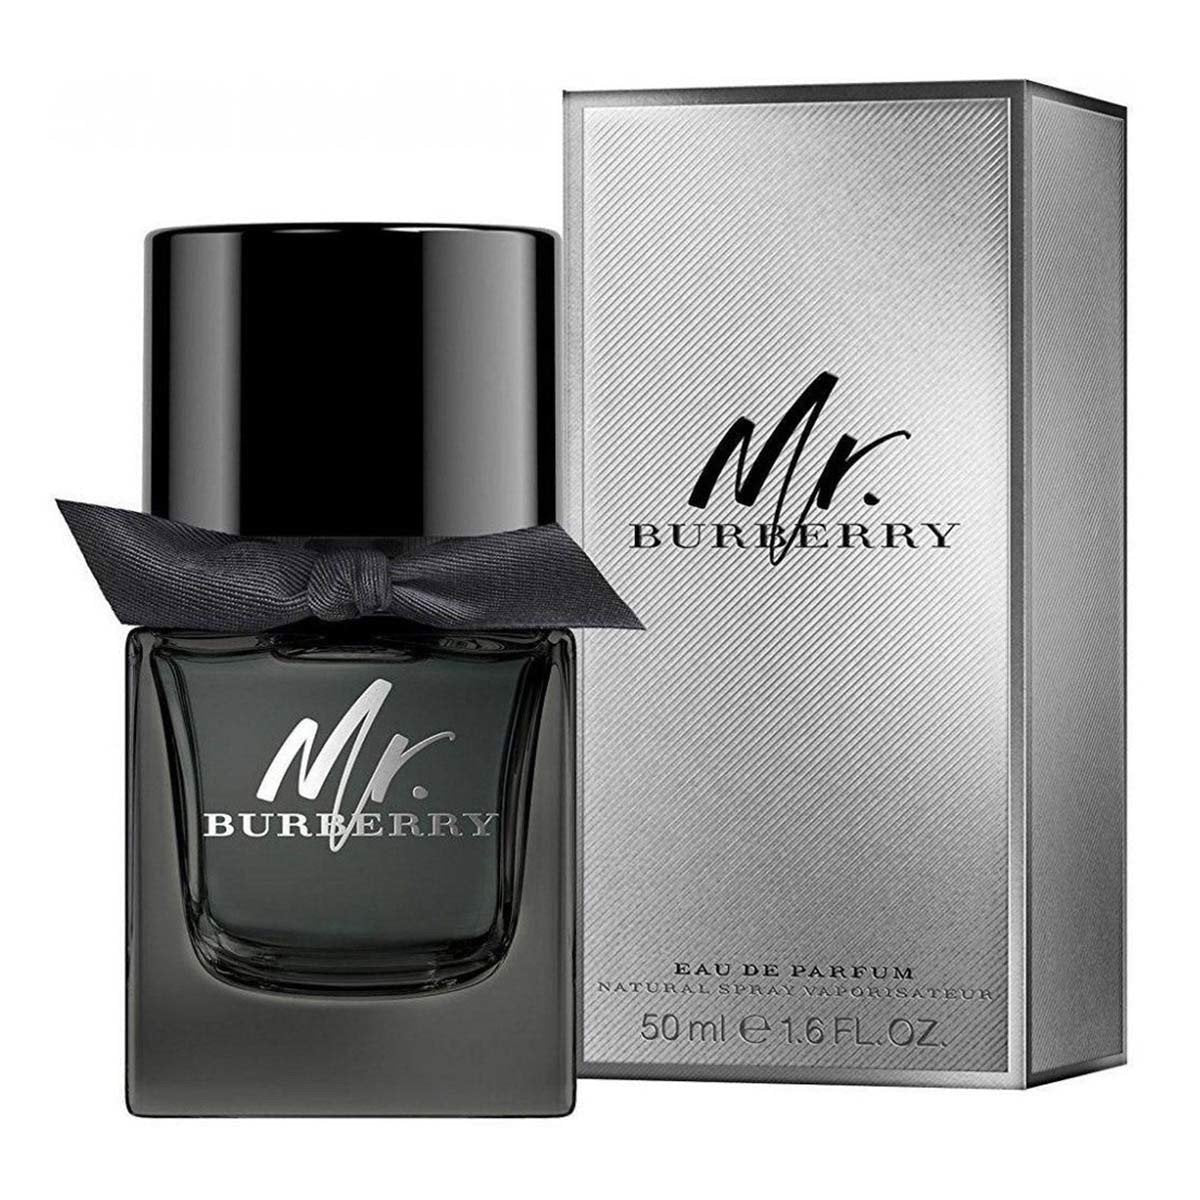 Burberry Mr Burberry Eau de Parfum 50mL